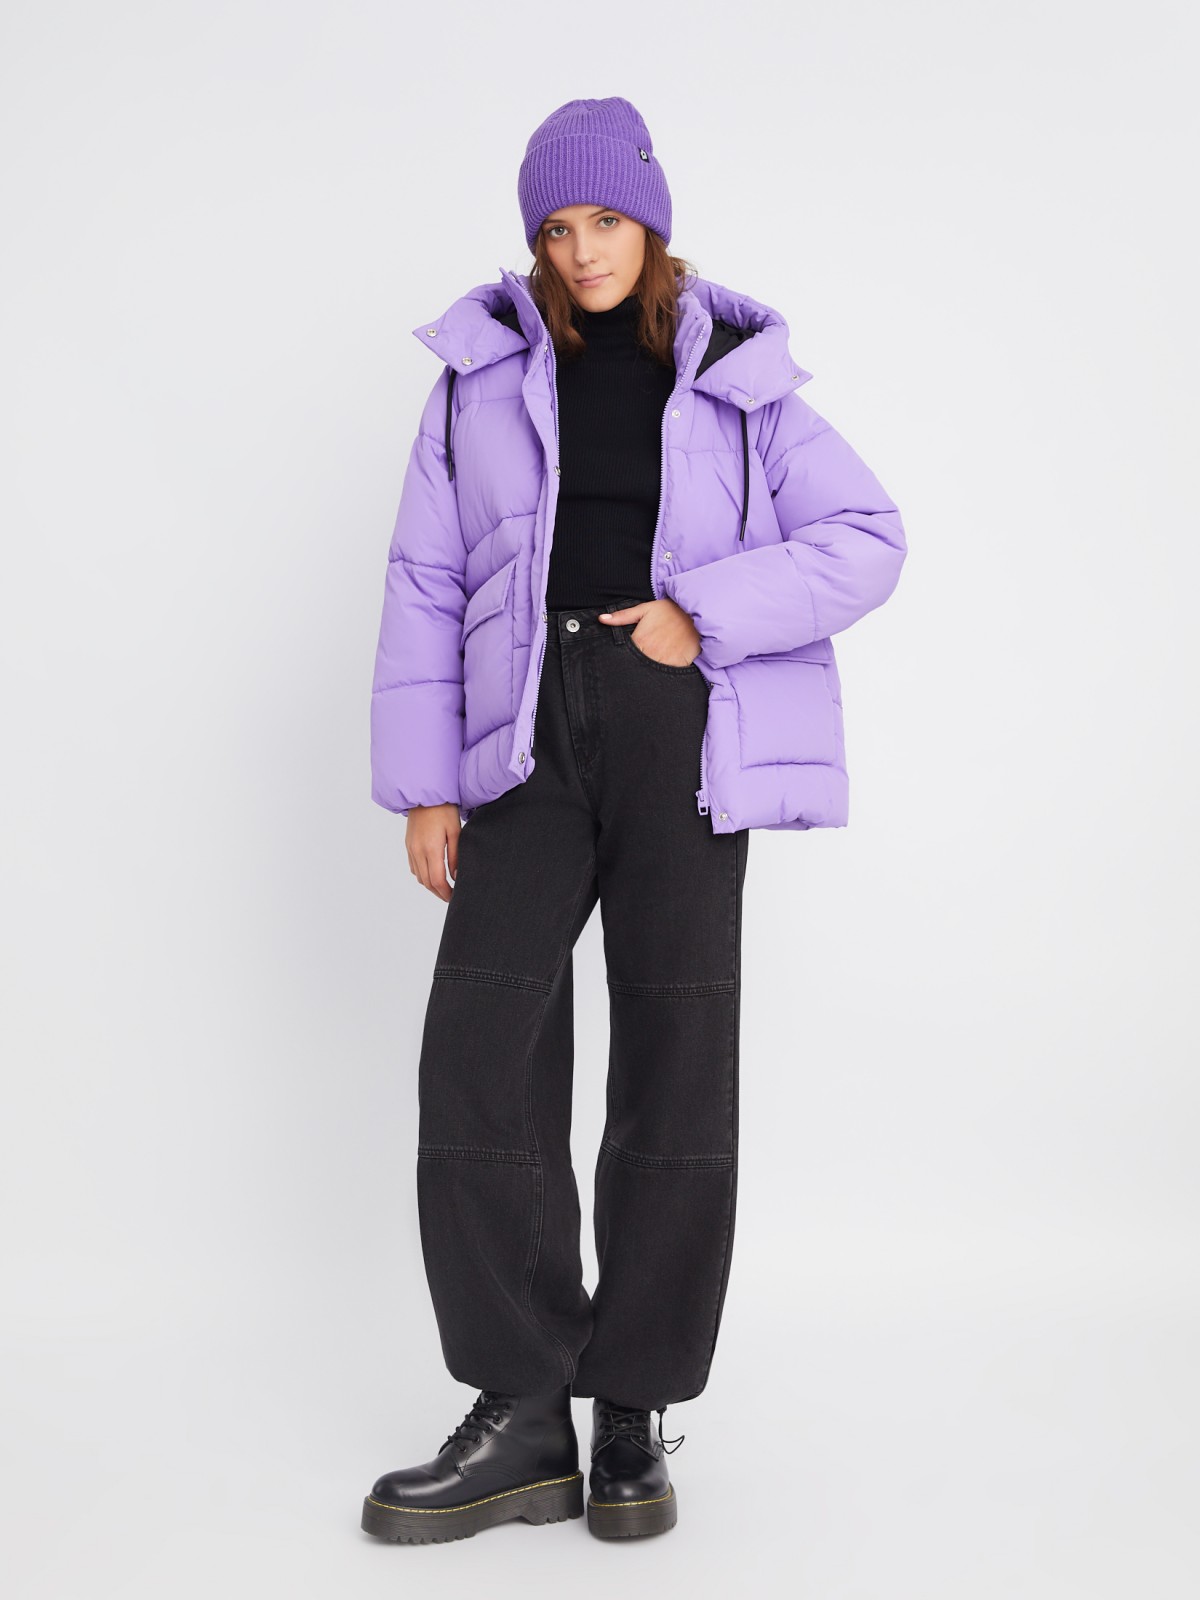 Тёплая дутая стёганая куртка с капюшоном и двойным воротником zolla 023345112104, цвет фиолетовый, размер XS - фото 2